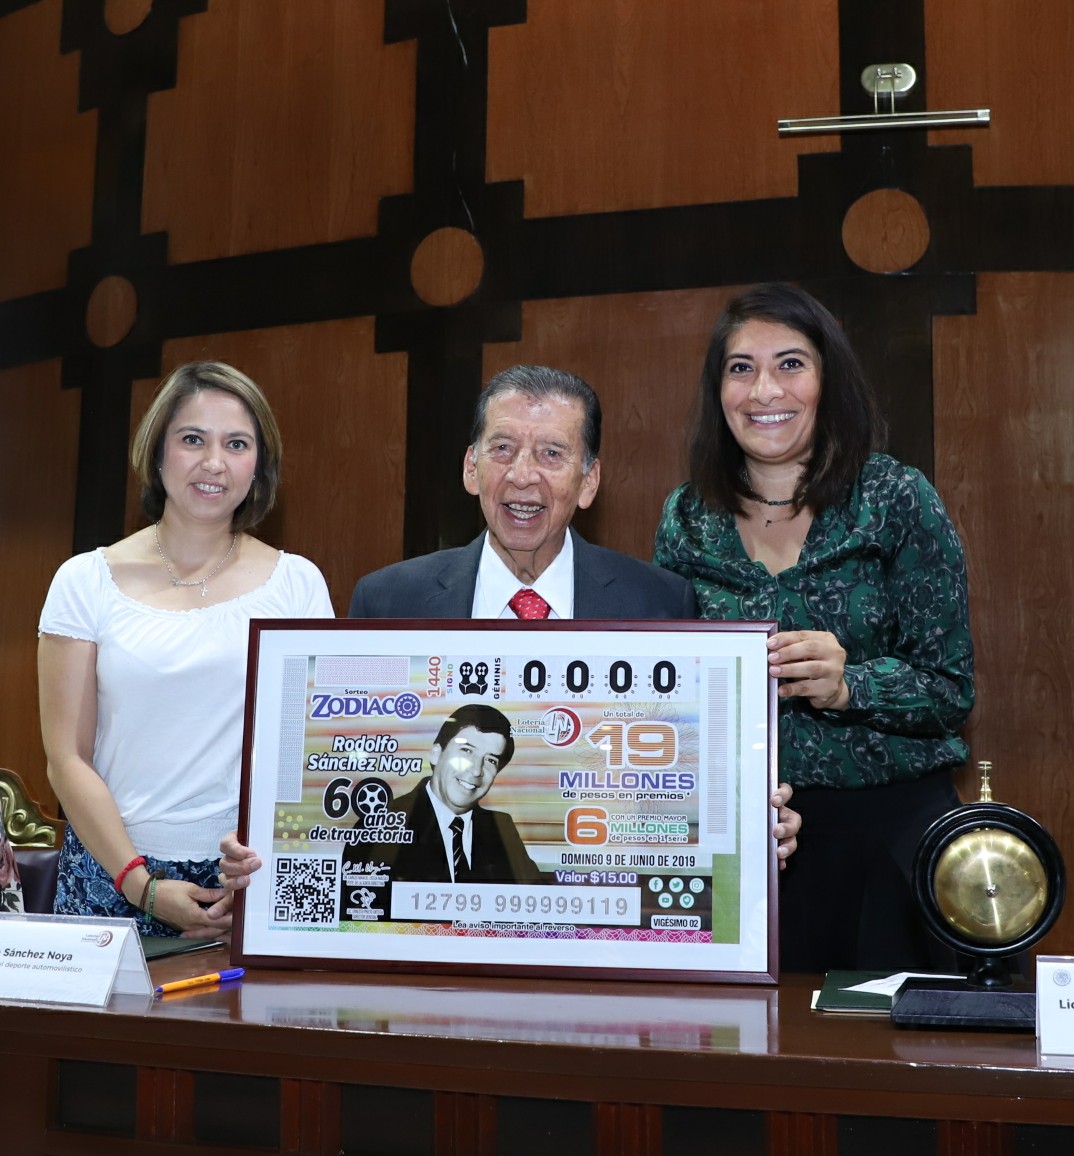 Fotografía donde posan con el billete del Sorteo Zodiaco, de izquierda a derecha: Mitzi Jocelyn Molina Ramírez, Rodolfo Sánchez Noya y María Concepción Hernández Nava.